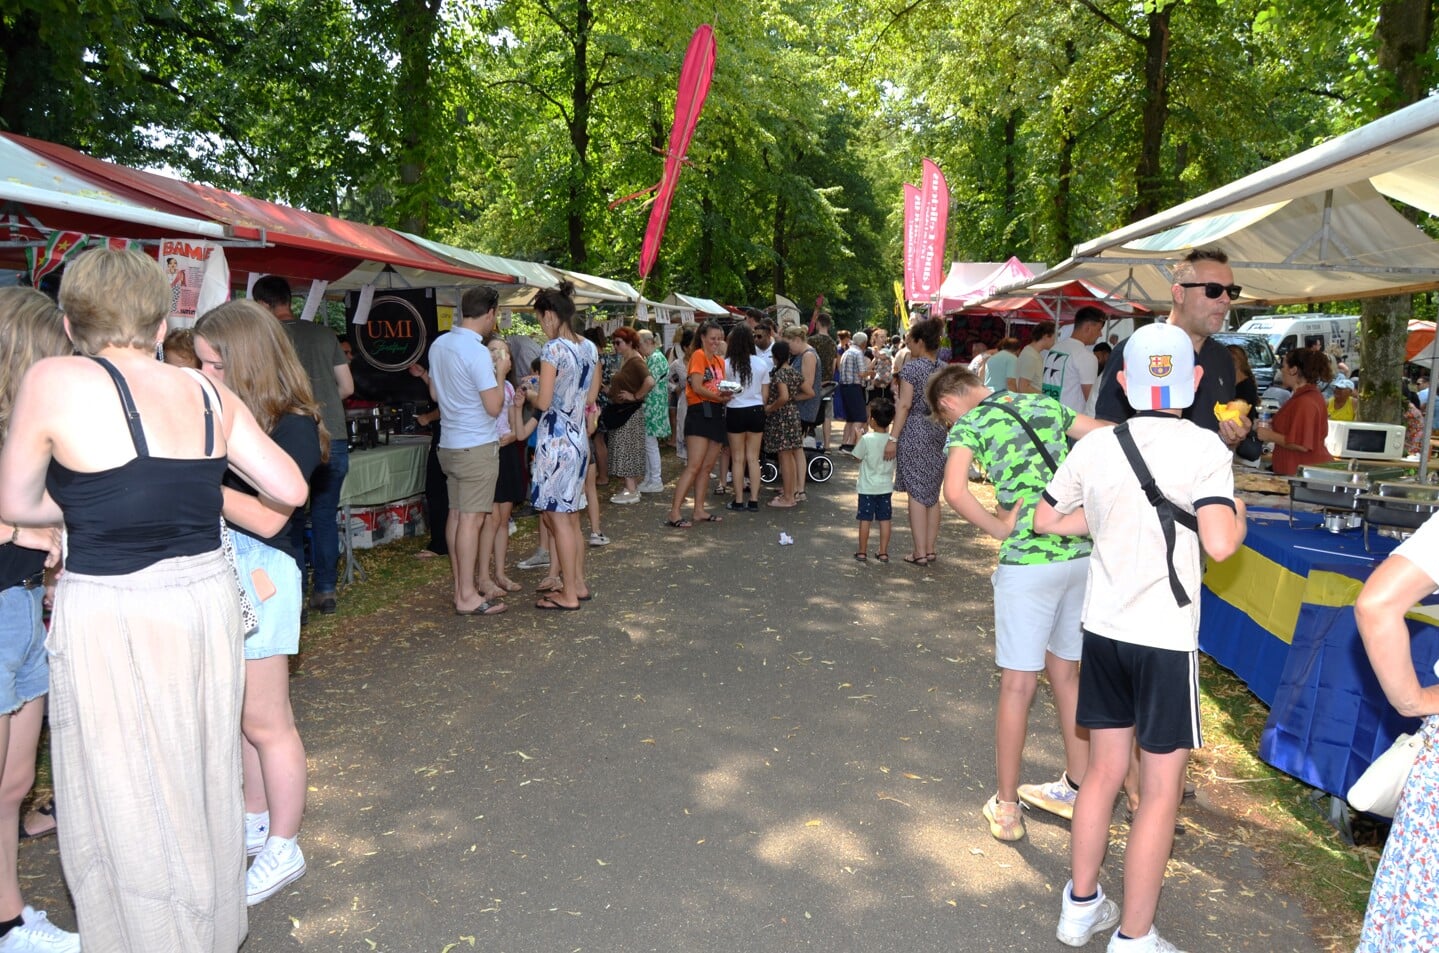 Multicultureel festival Bazaar in park Molenwijk ging gewoon van start zondag, maar werd rond drie uur 's middags gesloten vanwege de dreiging van zeer slecht weer.